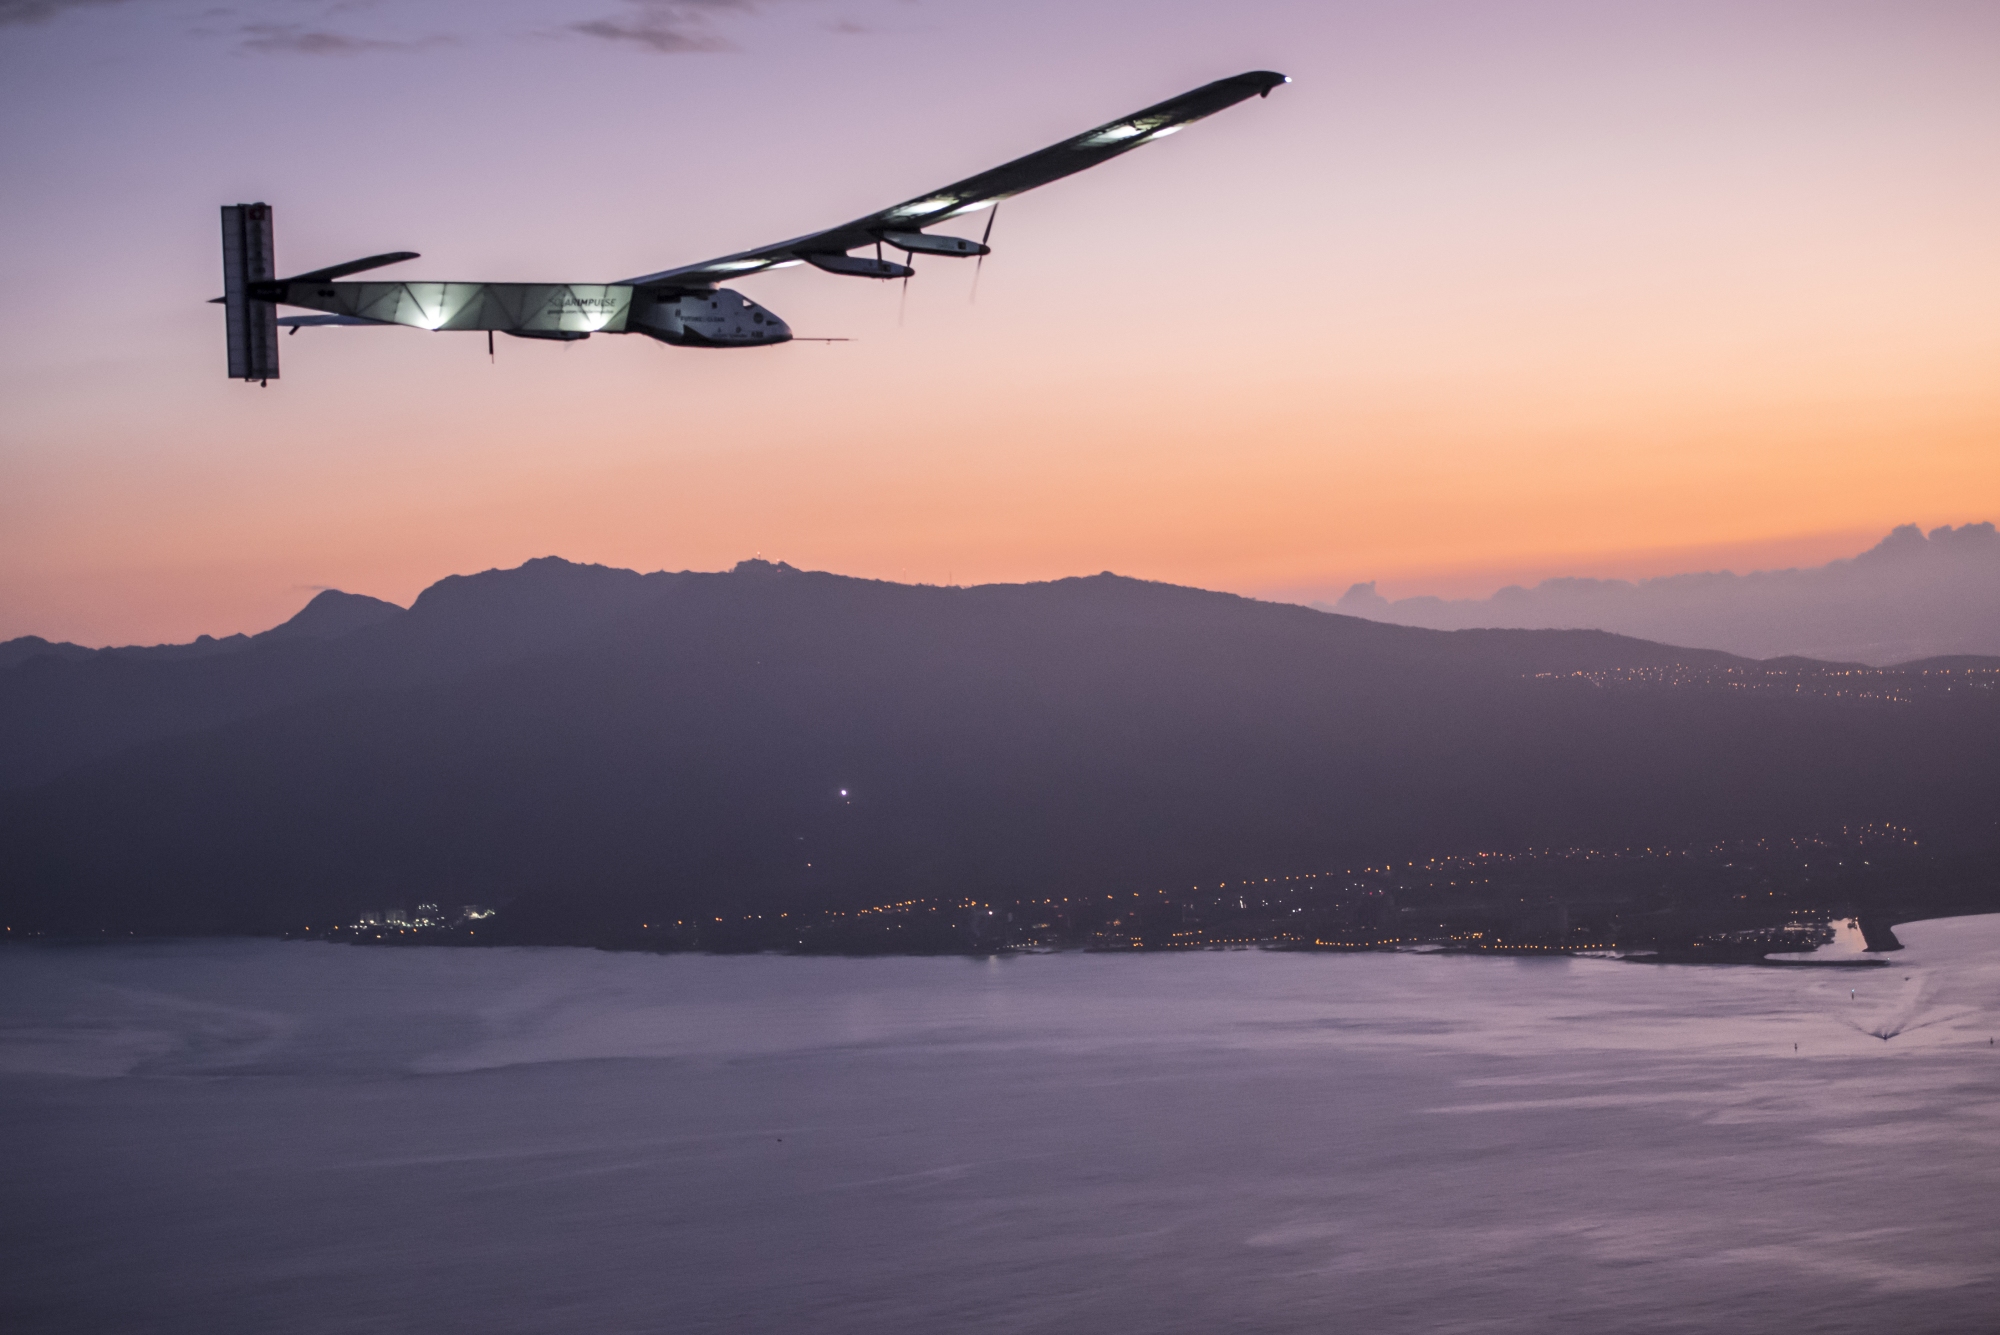 Le SI2, l'avion solaire du tour du monde, s'est posé à Hawaï le 3 juillet 2015. © Solar Impulse, Revillard, Rezo.ch